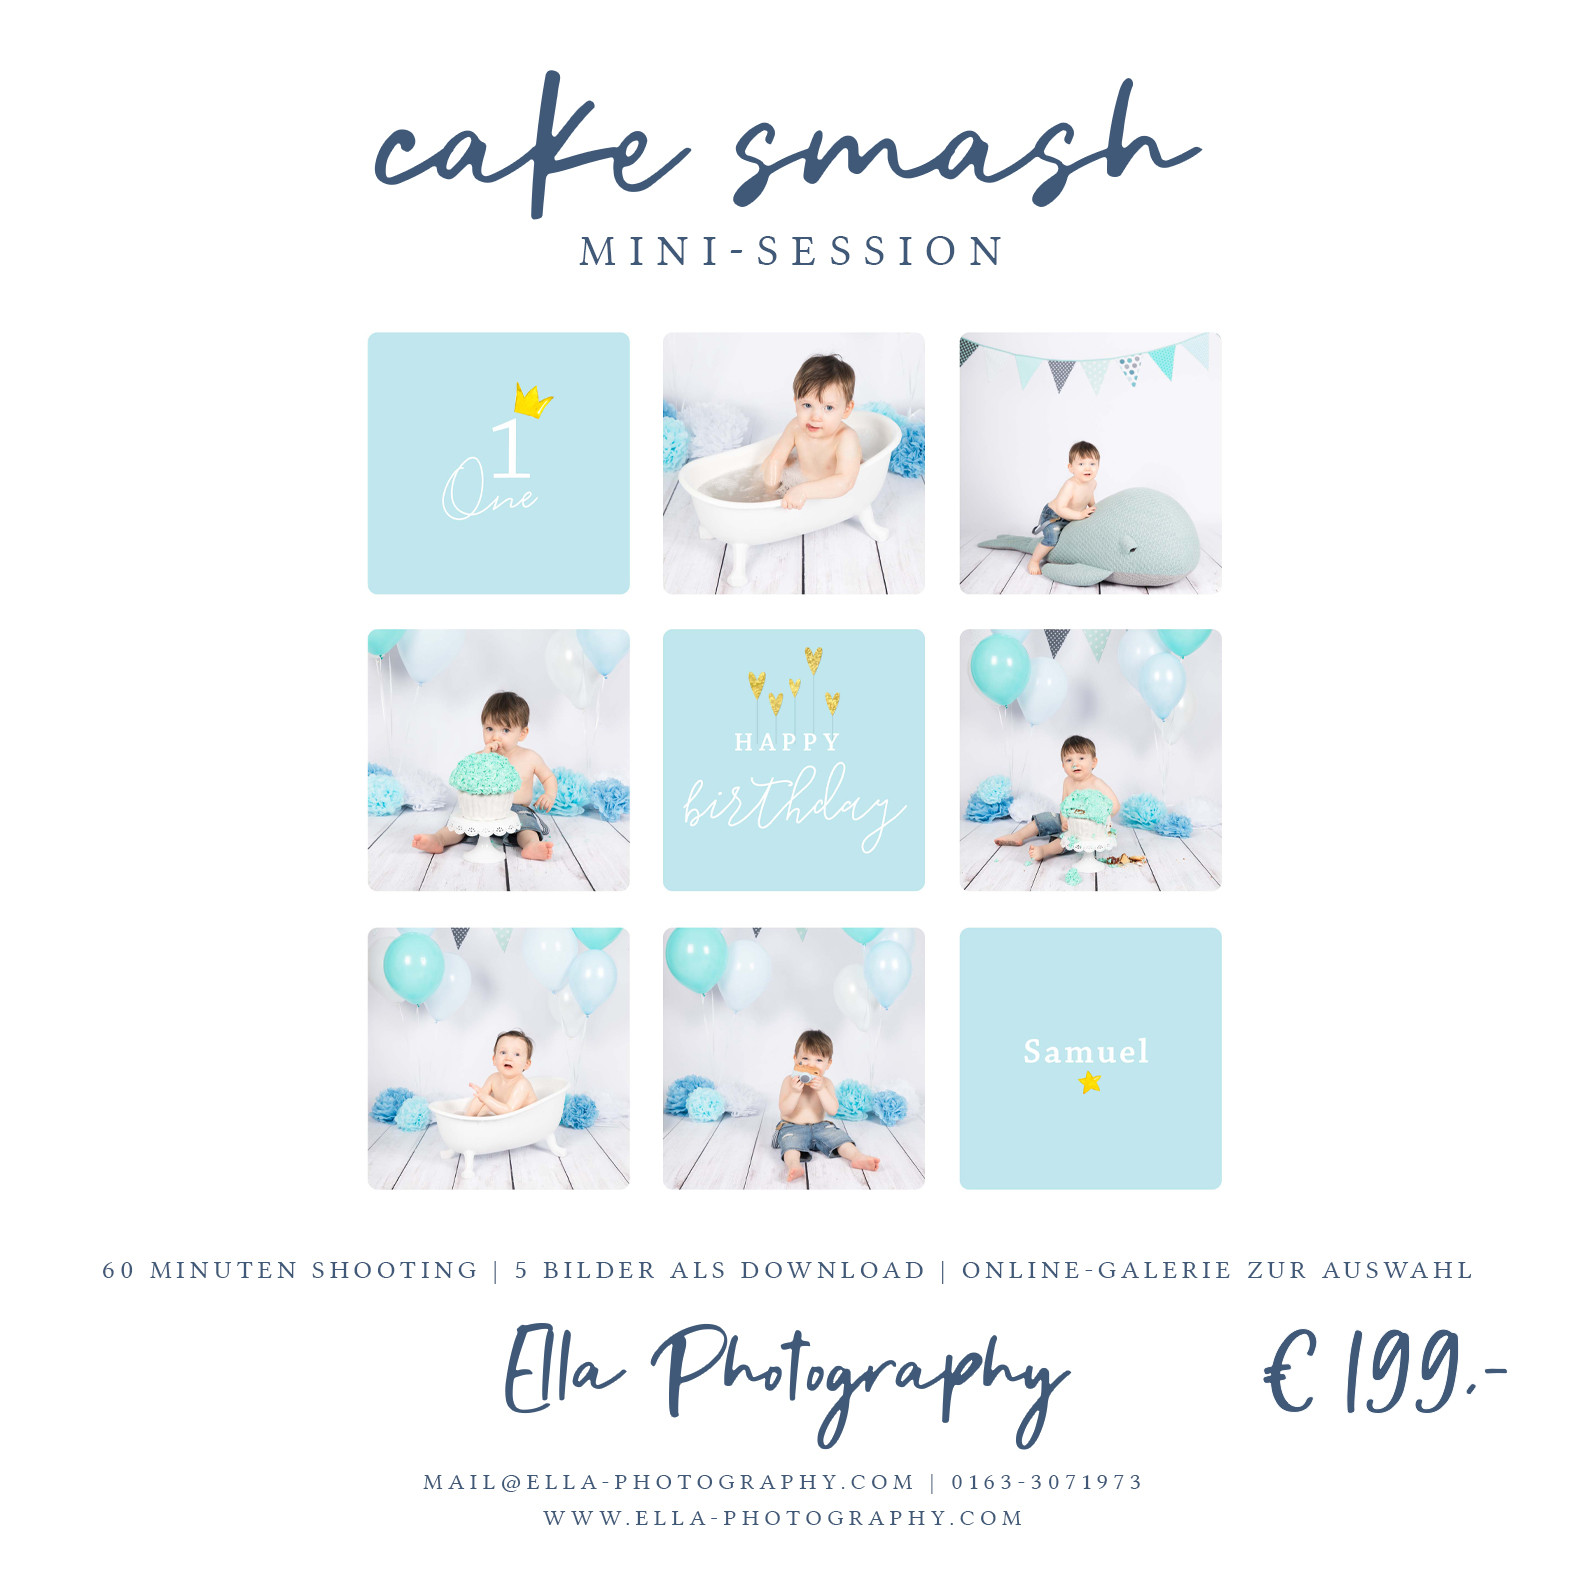 Aktion Cake Smash Shooting Mini Session kleiner Junge auf weißem Fotohintergrund mit Torte, Stofftier-Wal und bunten Luftballons